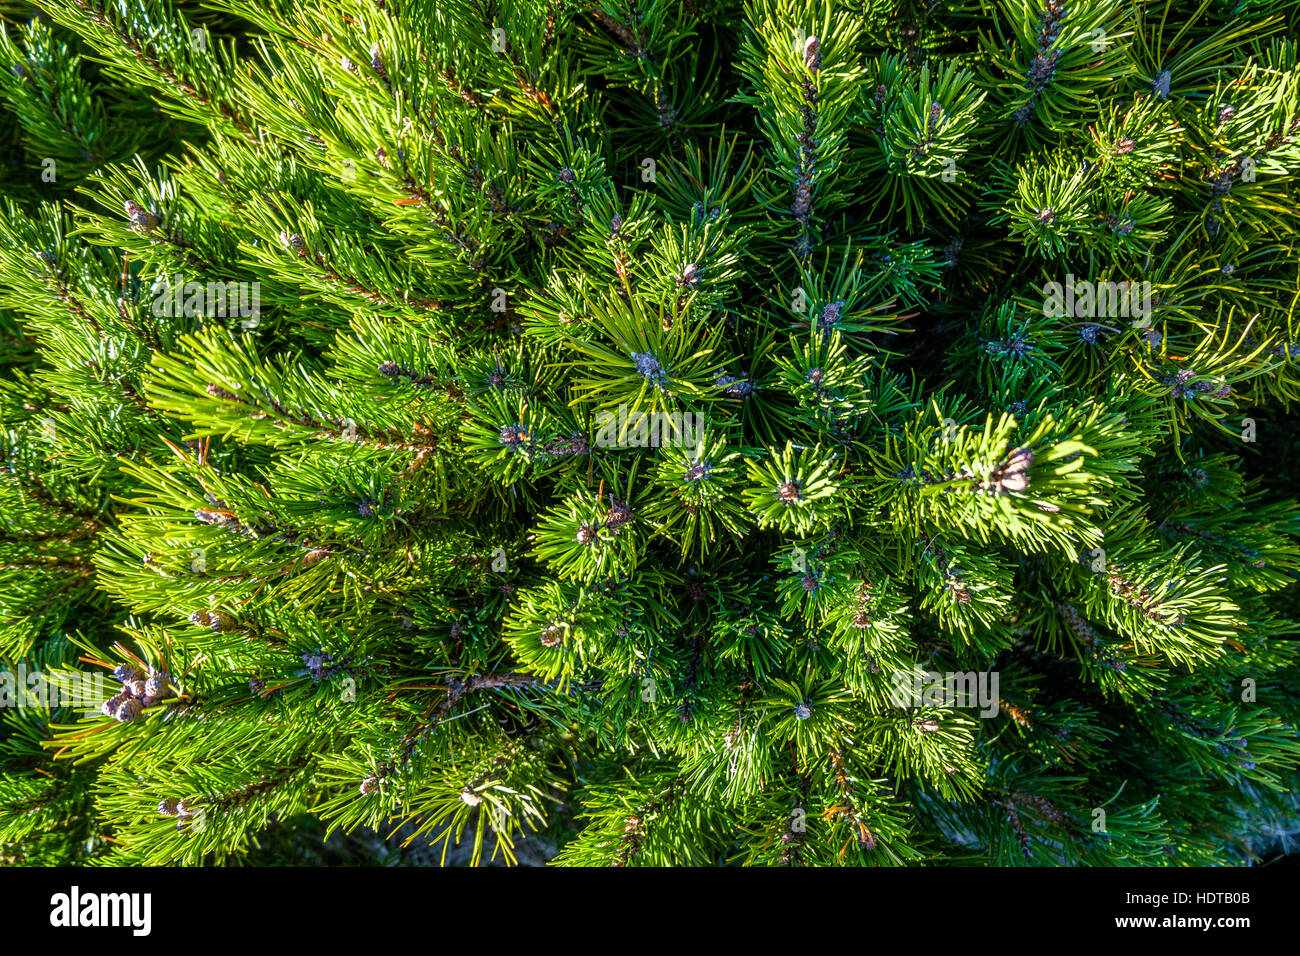 Top view of a dwarf pine bush. Stock Photo